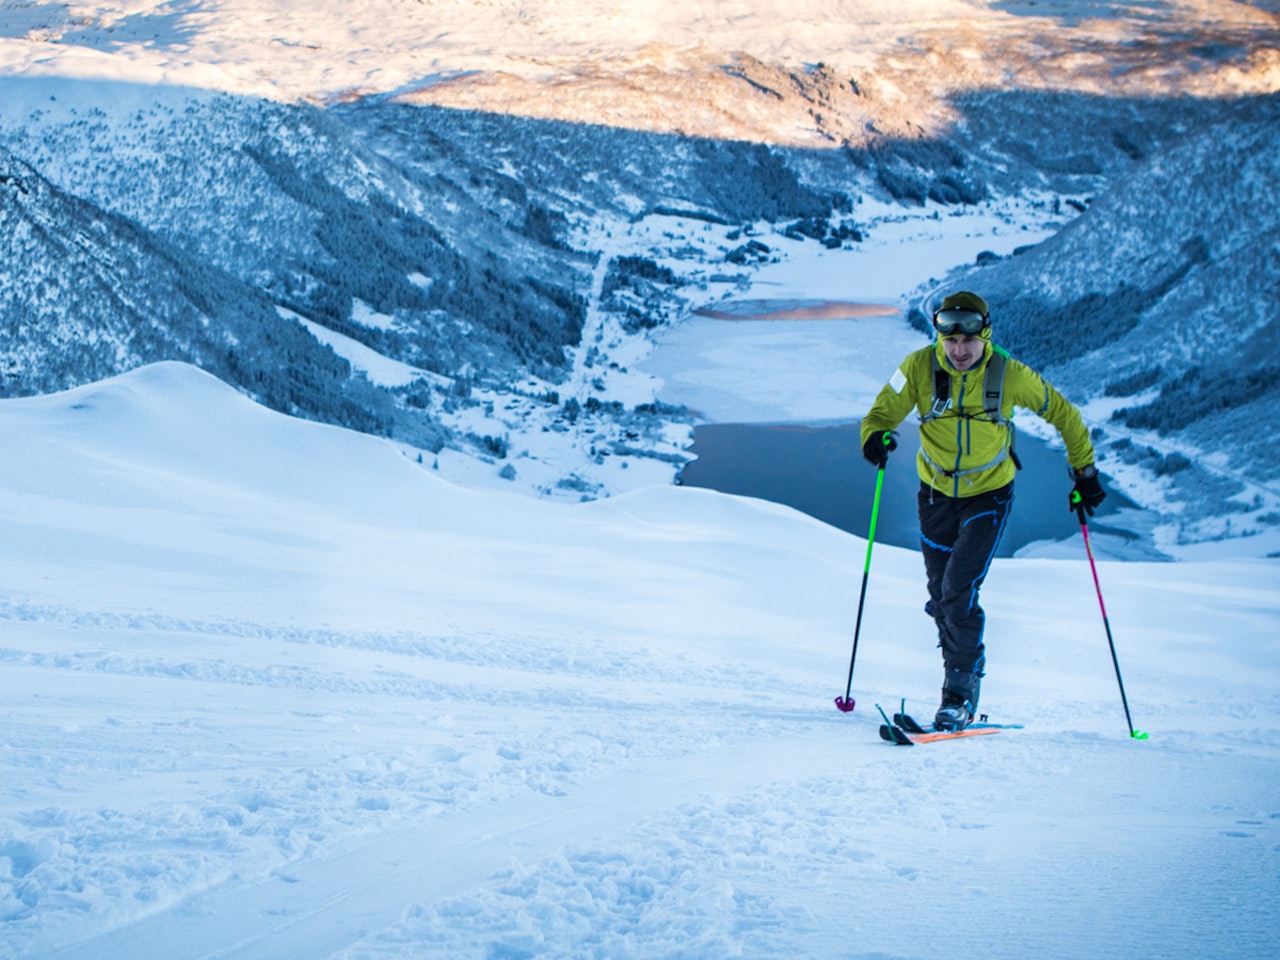 KLAR FOR OL: Landslagsutøver i skialpinisme, Lars Erik Skjervheim, lover å bidra til at Norge tar OL-gull i sporten som nettopp er tatt opp av IOC. Foto: Håvard Myklebust